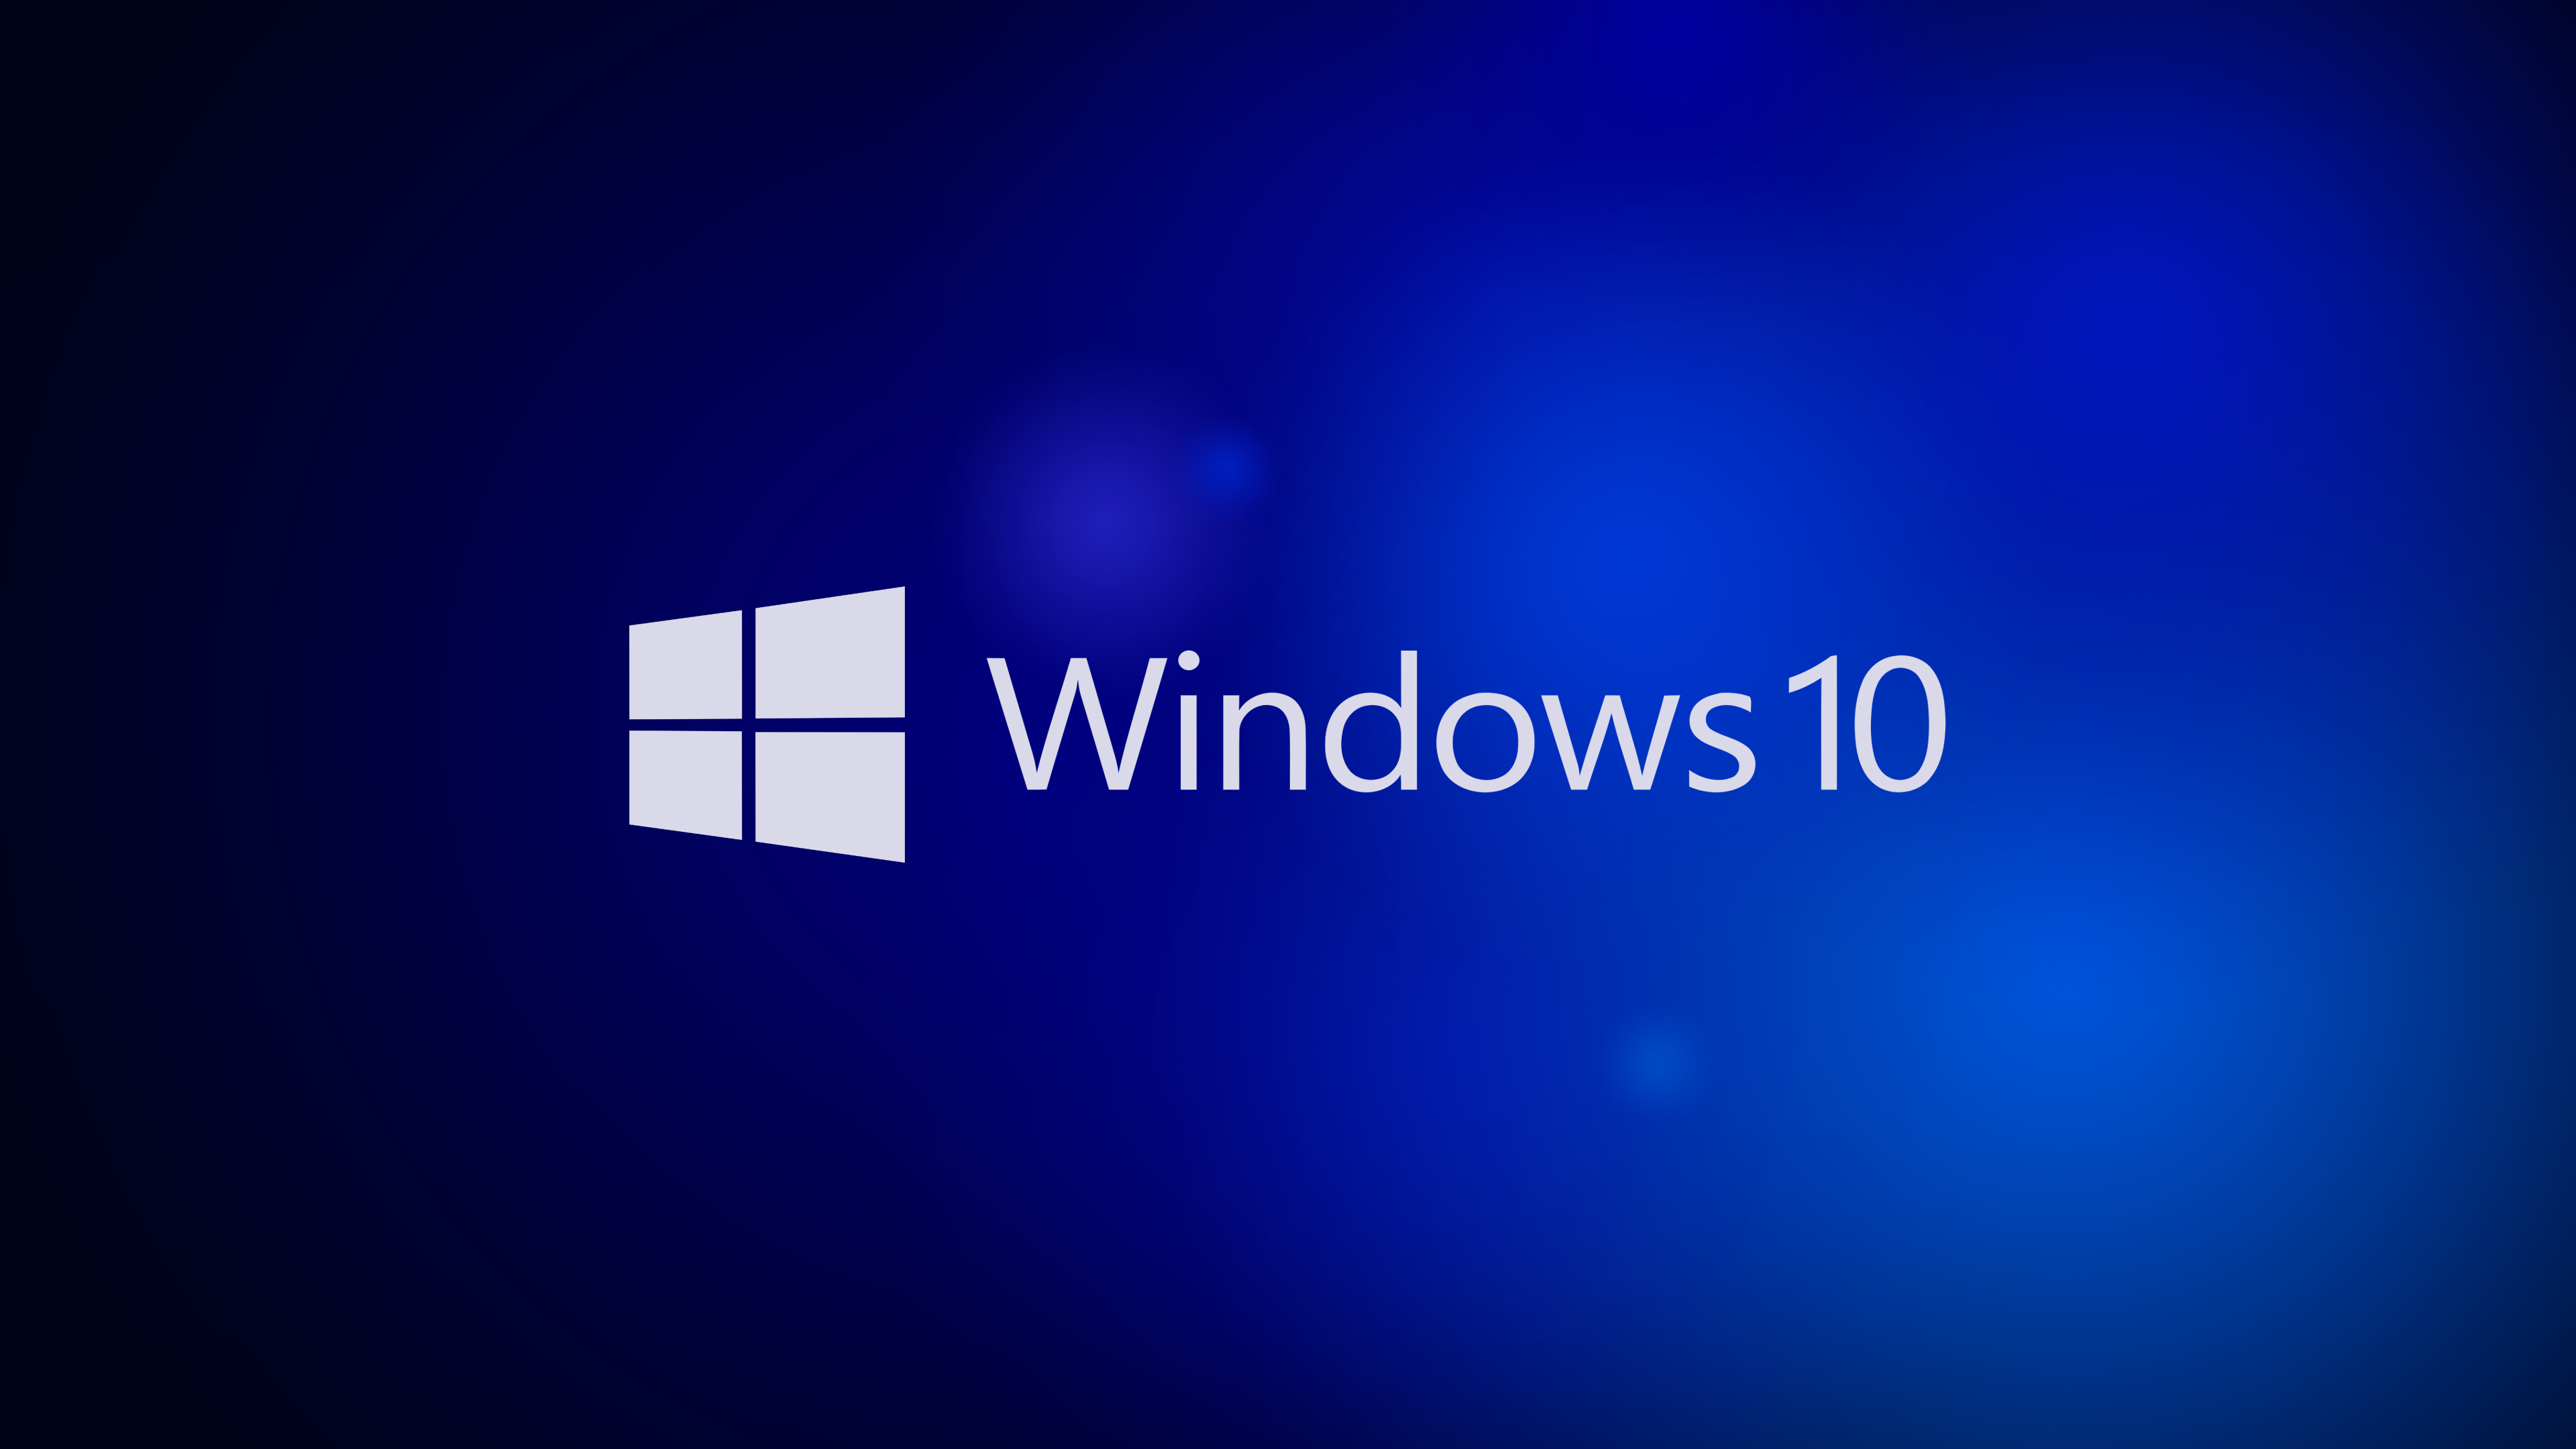 Windows 10 trừu tượng 4K sẽ khiến cho màn hình máy tính của bạn trở nên sống động hơn bao giờ hết. Nếu bạn đang tìm kiếm những hình nền đẹp và ấn tượng, hãy ghé thăm ngay trang web hình nền 4K và sắm ngay cho mình những bức ảnh đỉnh cao nhất!